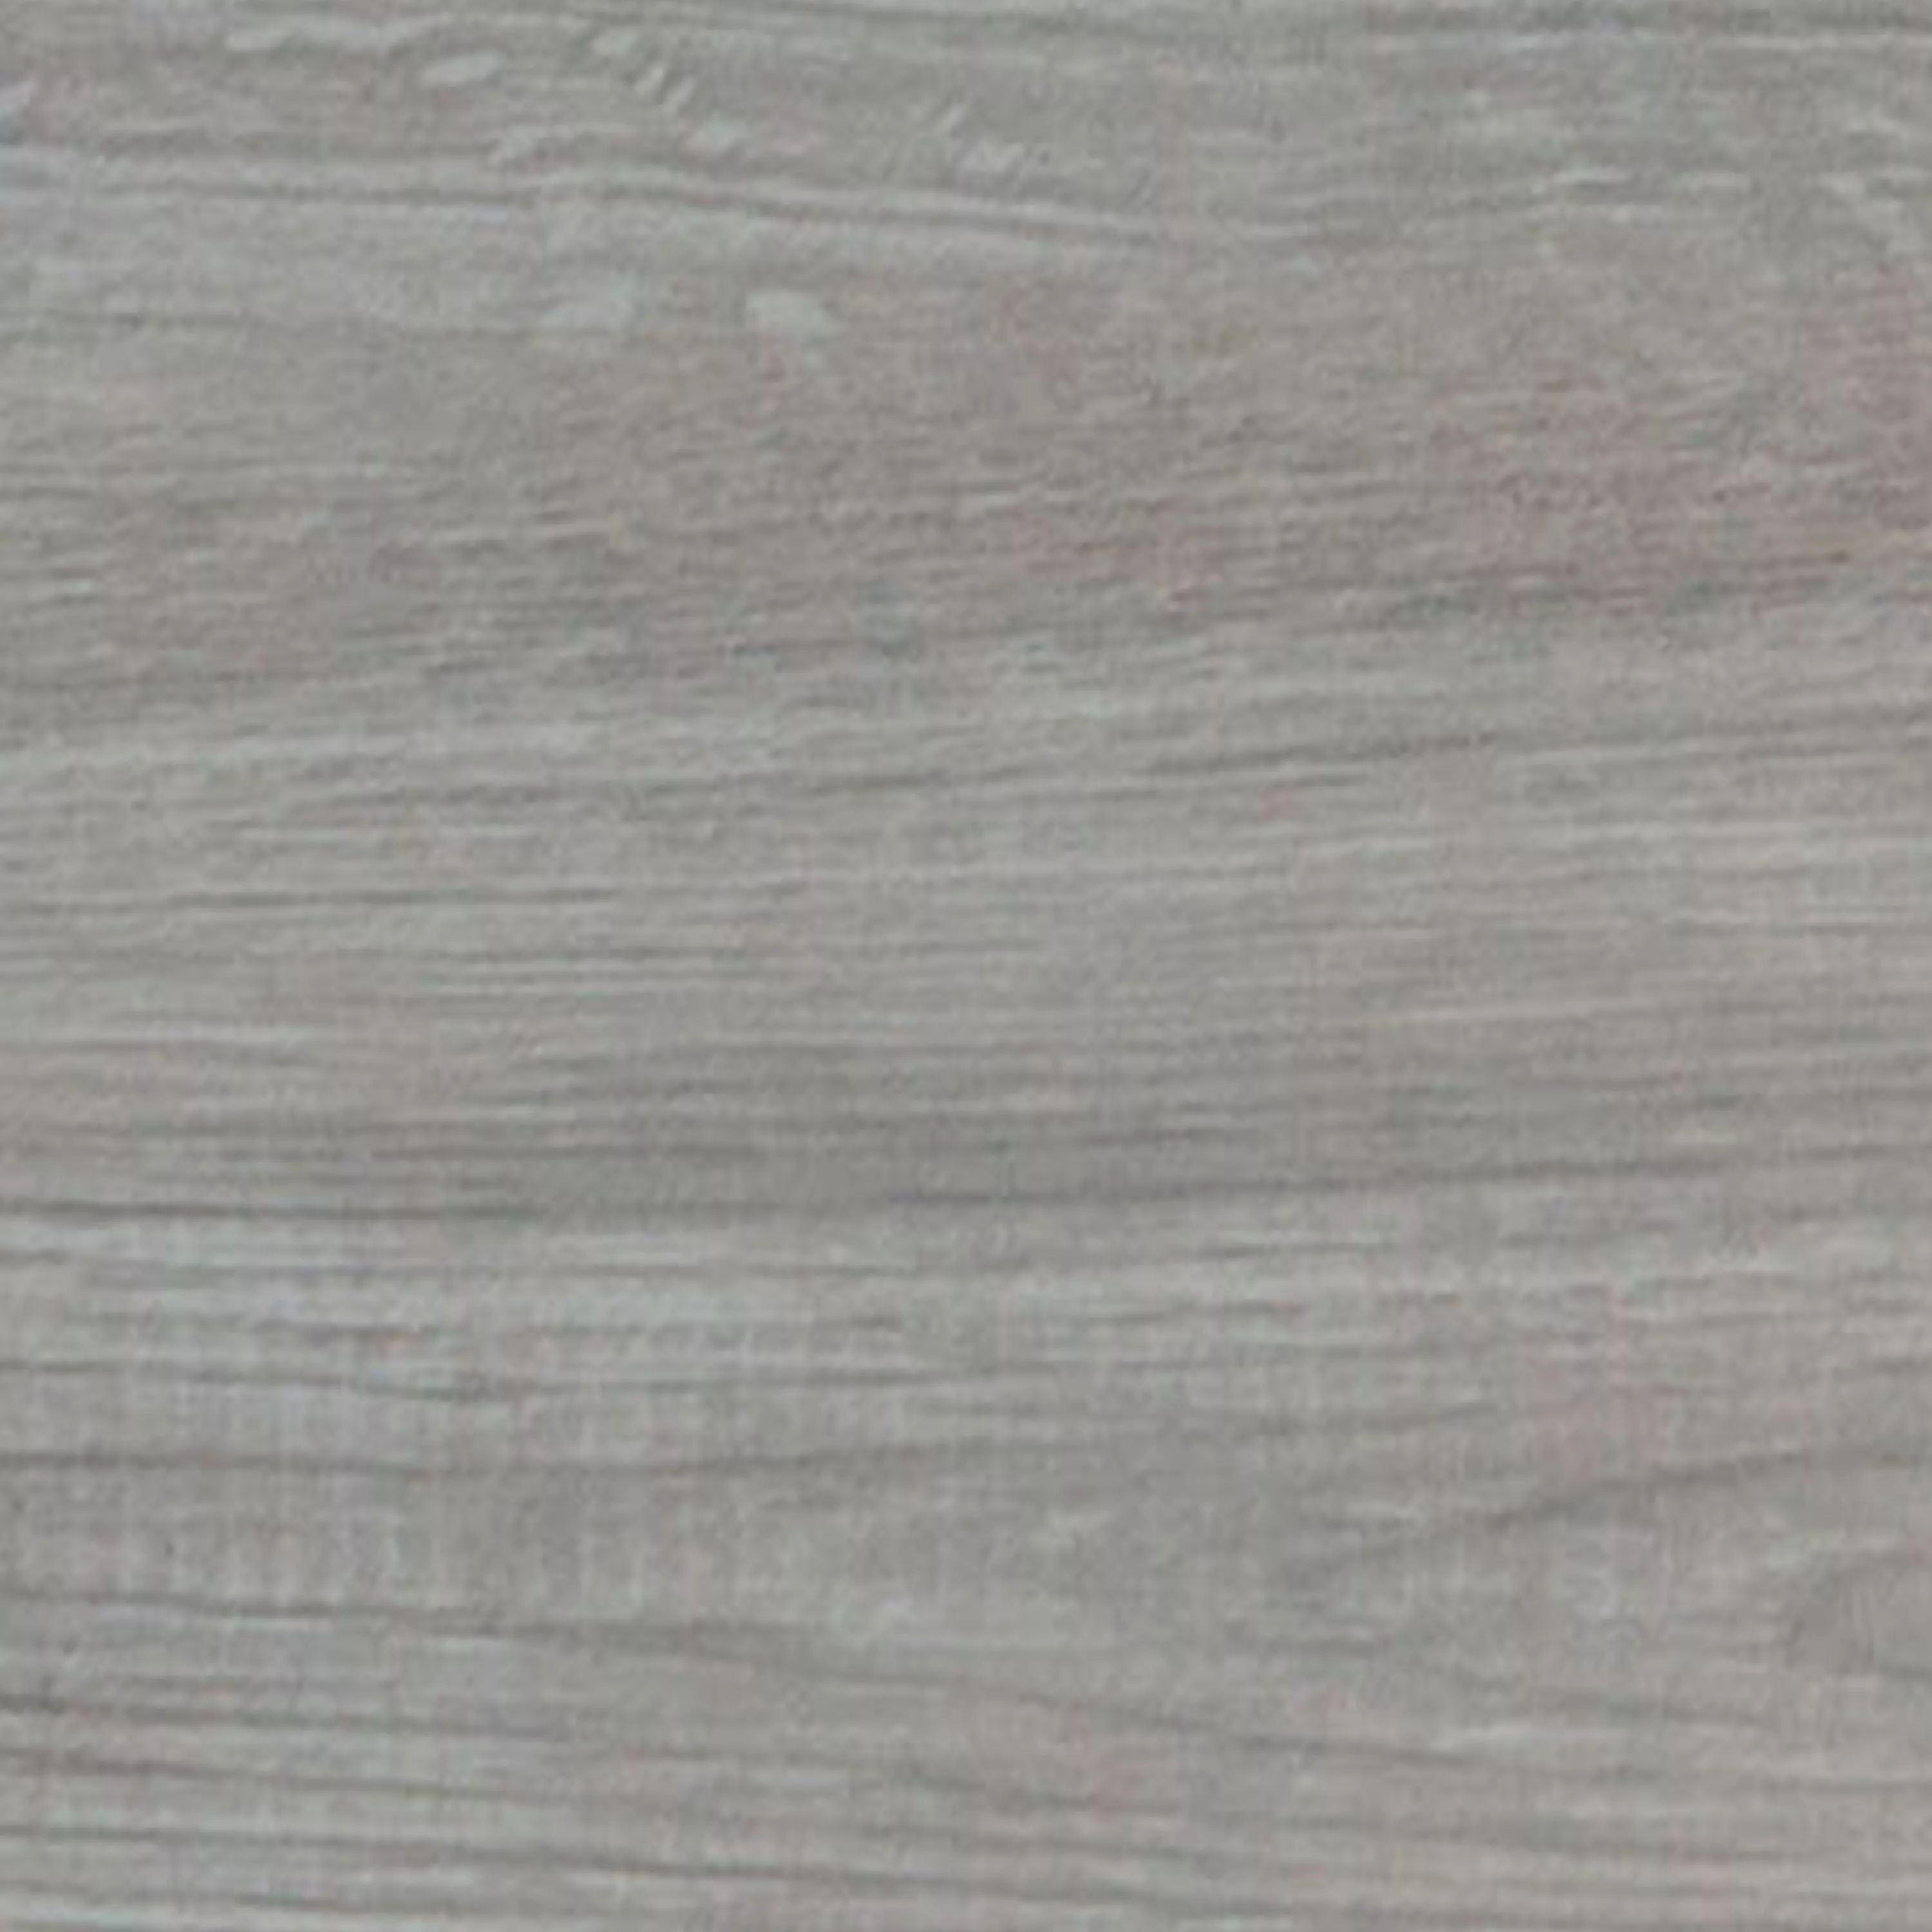 Podlahové Dlaždice Dřevěný Vzhled Fullwood Béžová 20x120cm 